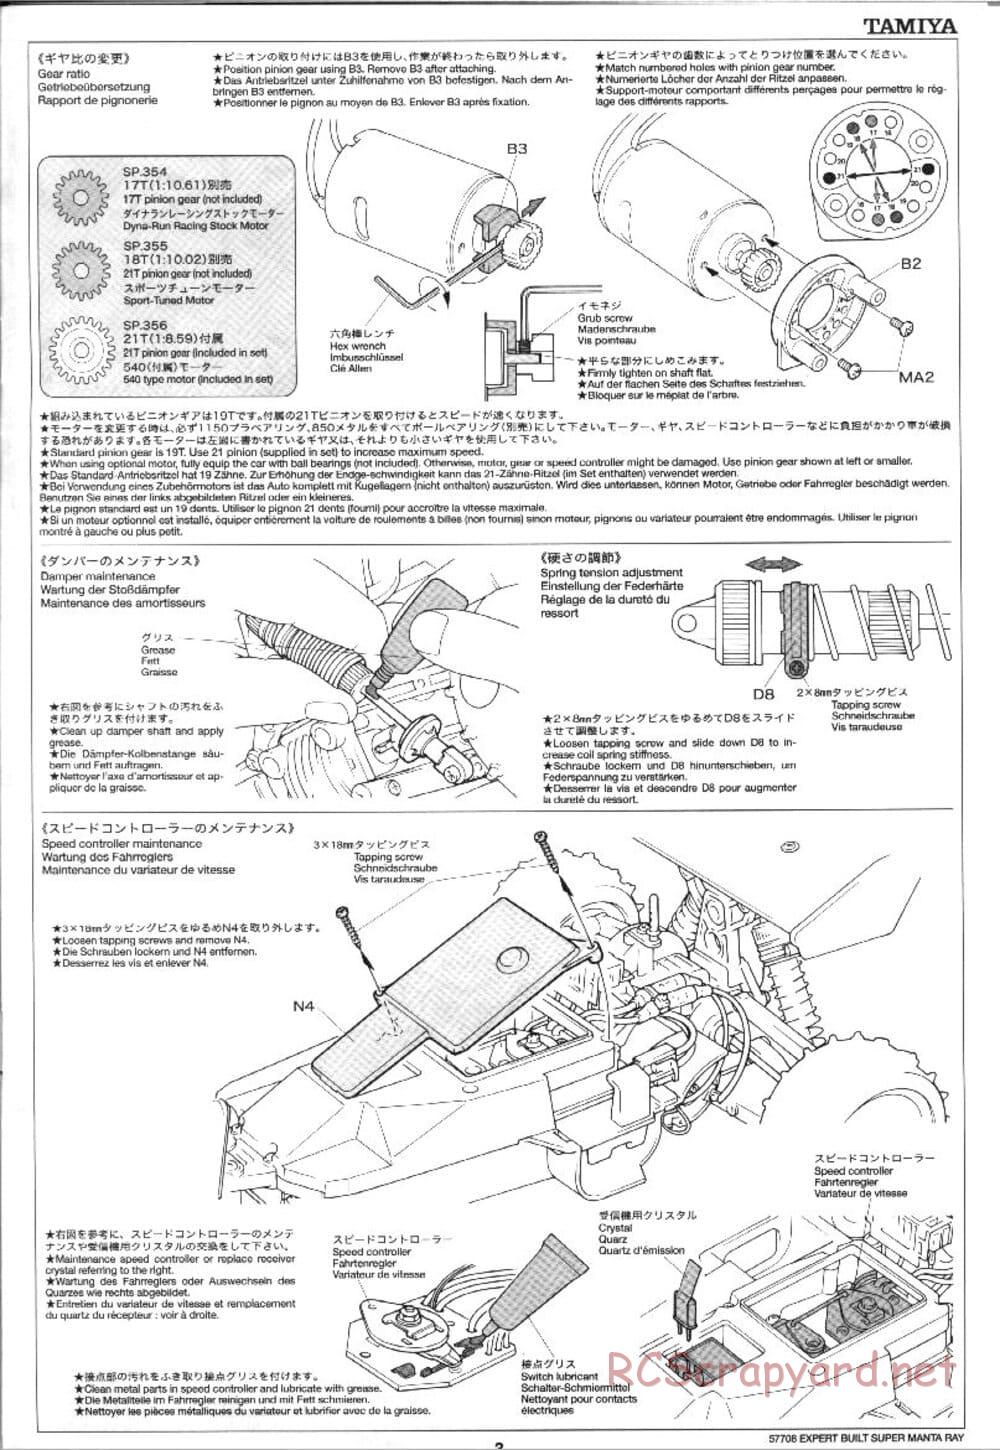 Tamiya - XB Super Manta Ray - DF-01 Chassis - Manual - Page 3